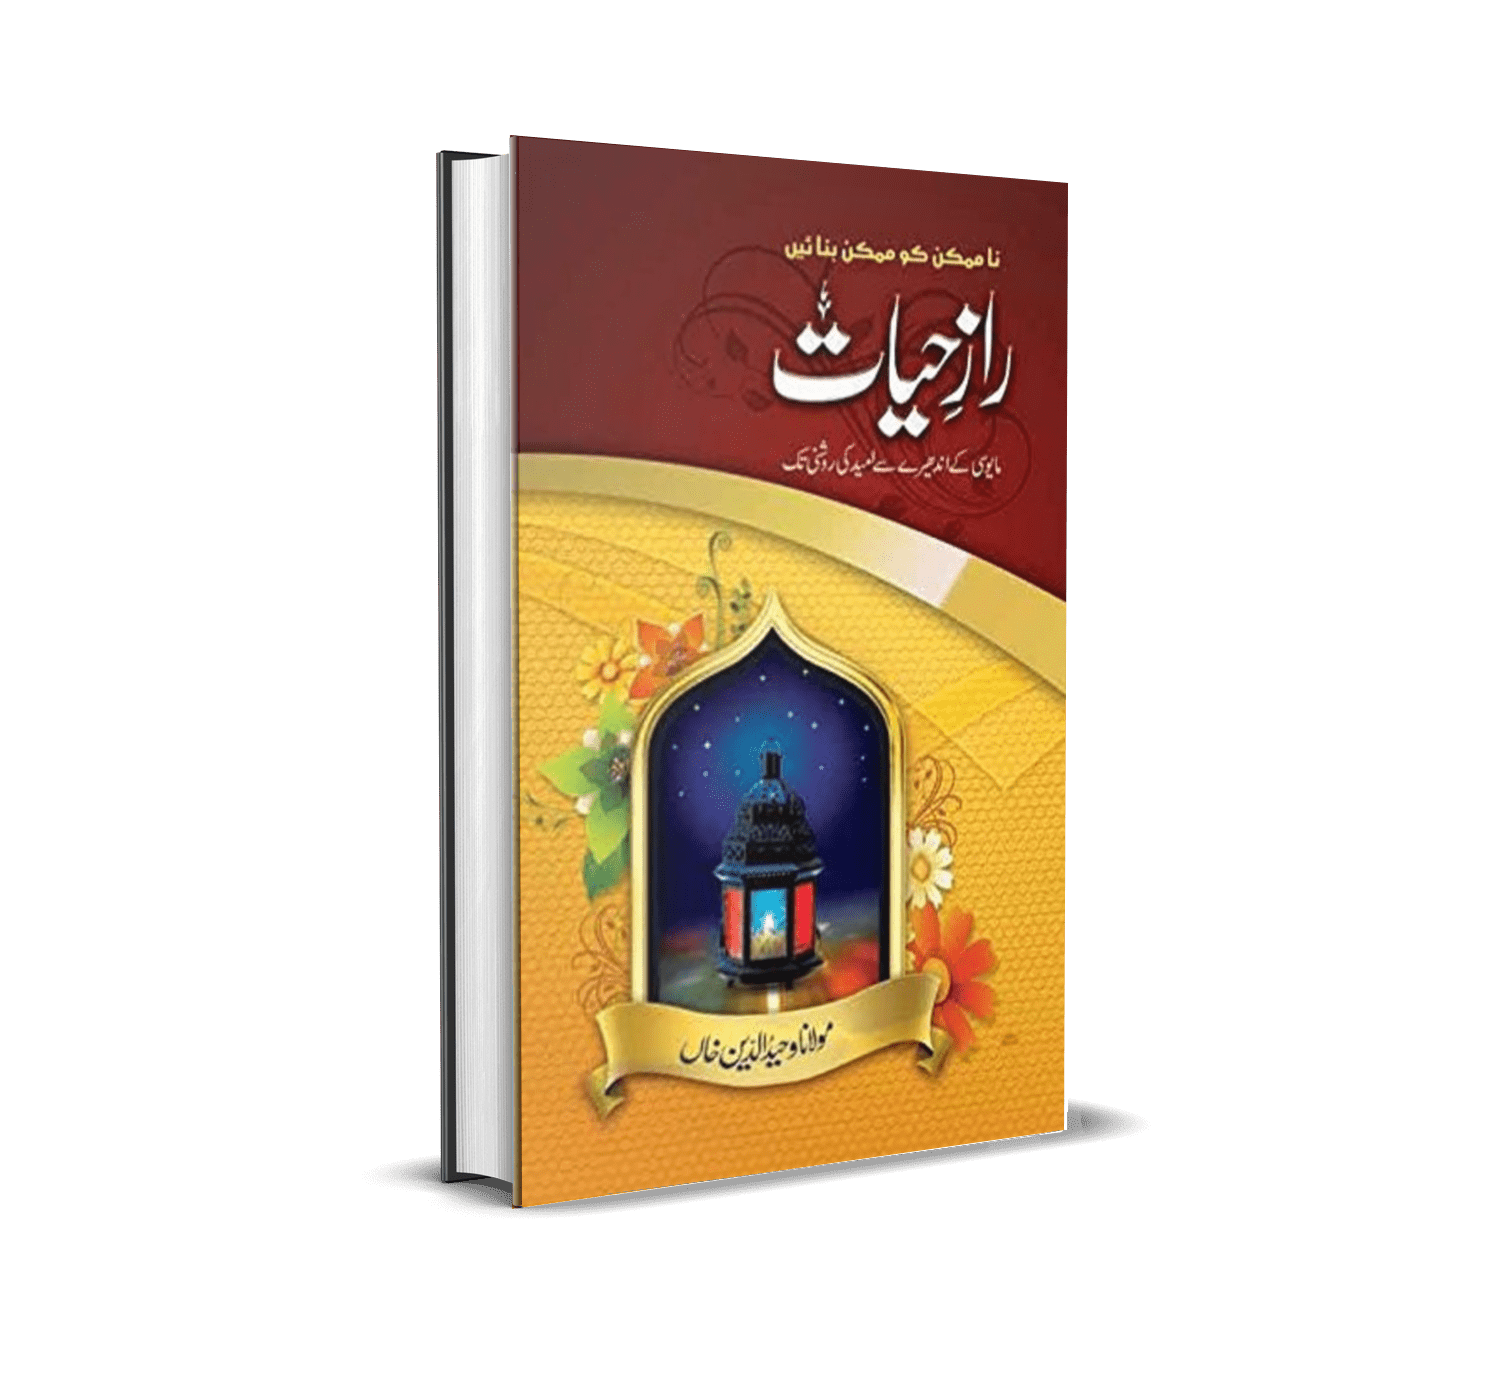 Raaz e Hayat by Maulana Wahiduddin Khan